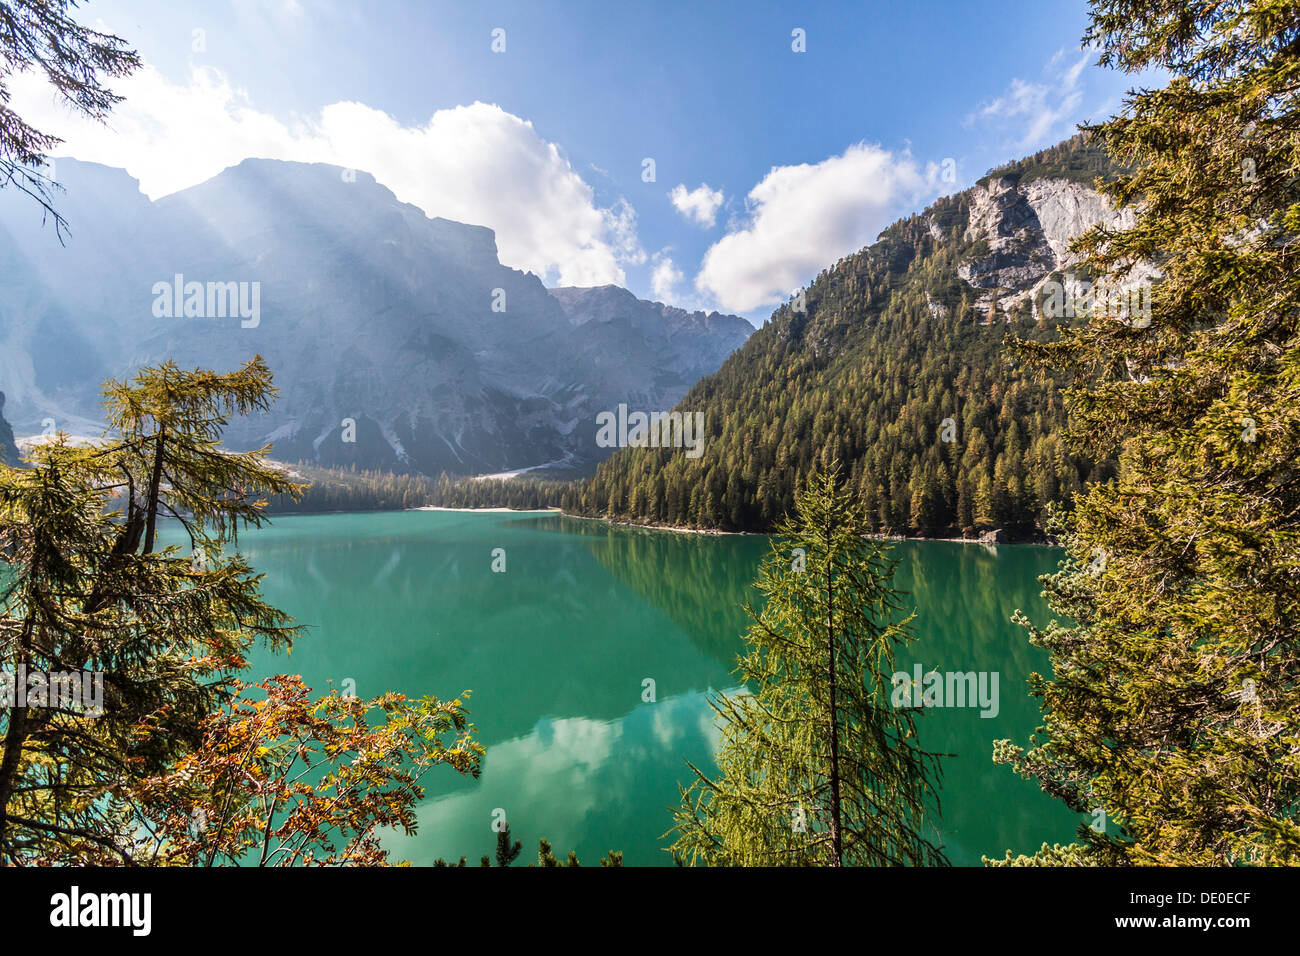 Il lago di Braies, il Lago di Braies, Braies, Braies, Valle di Braies, Dolomiti, provincia di Bolzano, Alto Adige, Italia, Europa Foto Stock